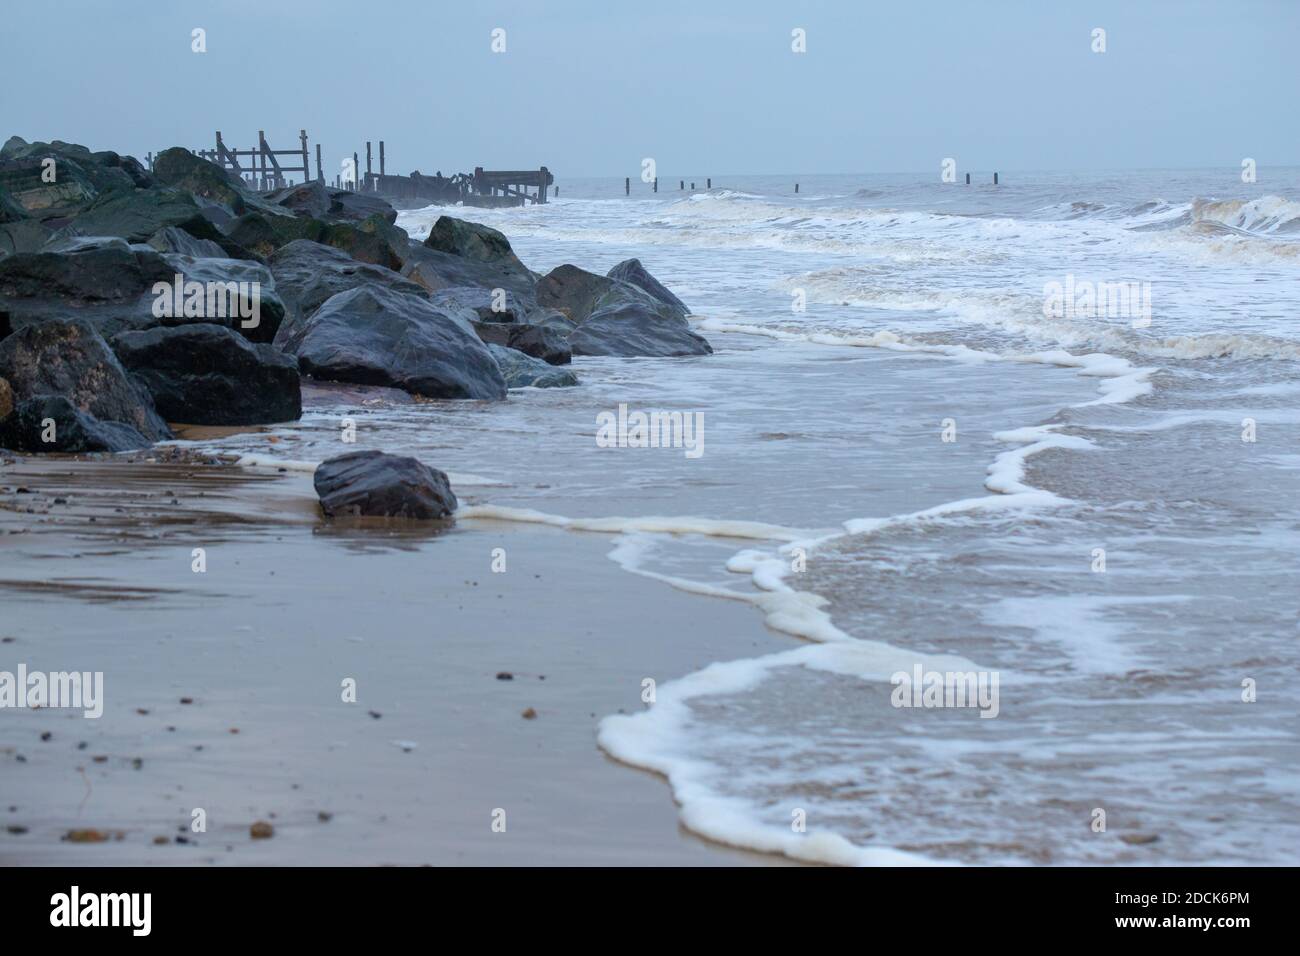 Happisburgh Beach, Norfolk. Küstenfelsen Erosion durch die Nordsee. Meeresverteidigung von importierten Norwegenfelsen links Vordergrund, Versuch, alte ti zu ersetzen Stockfoto